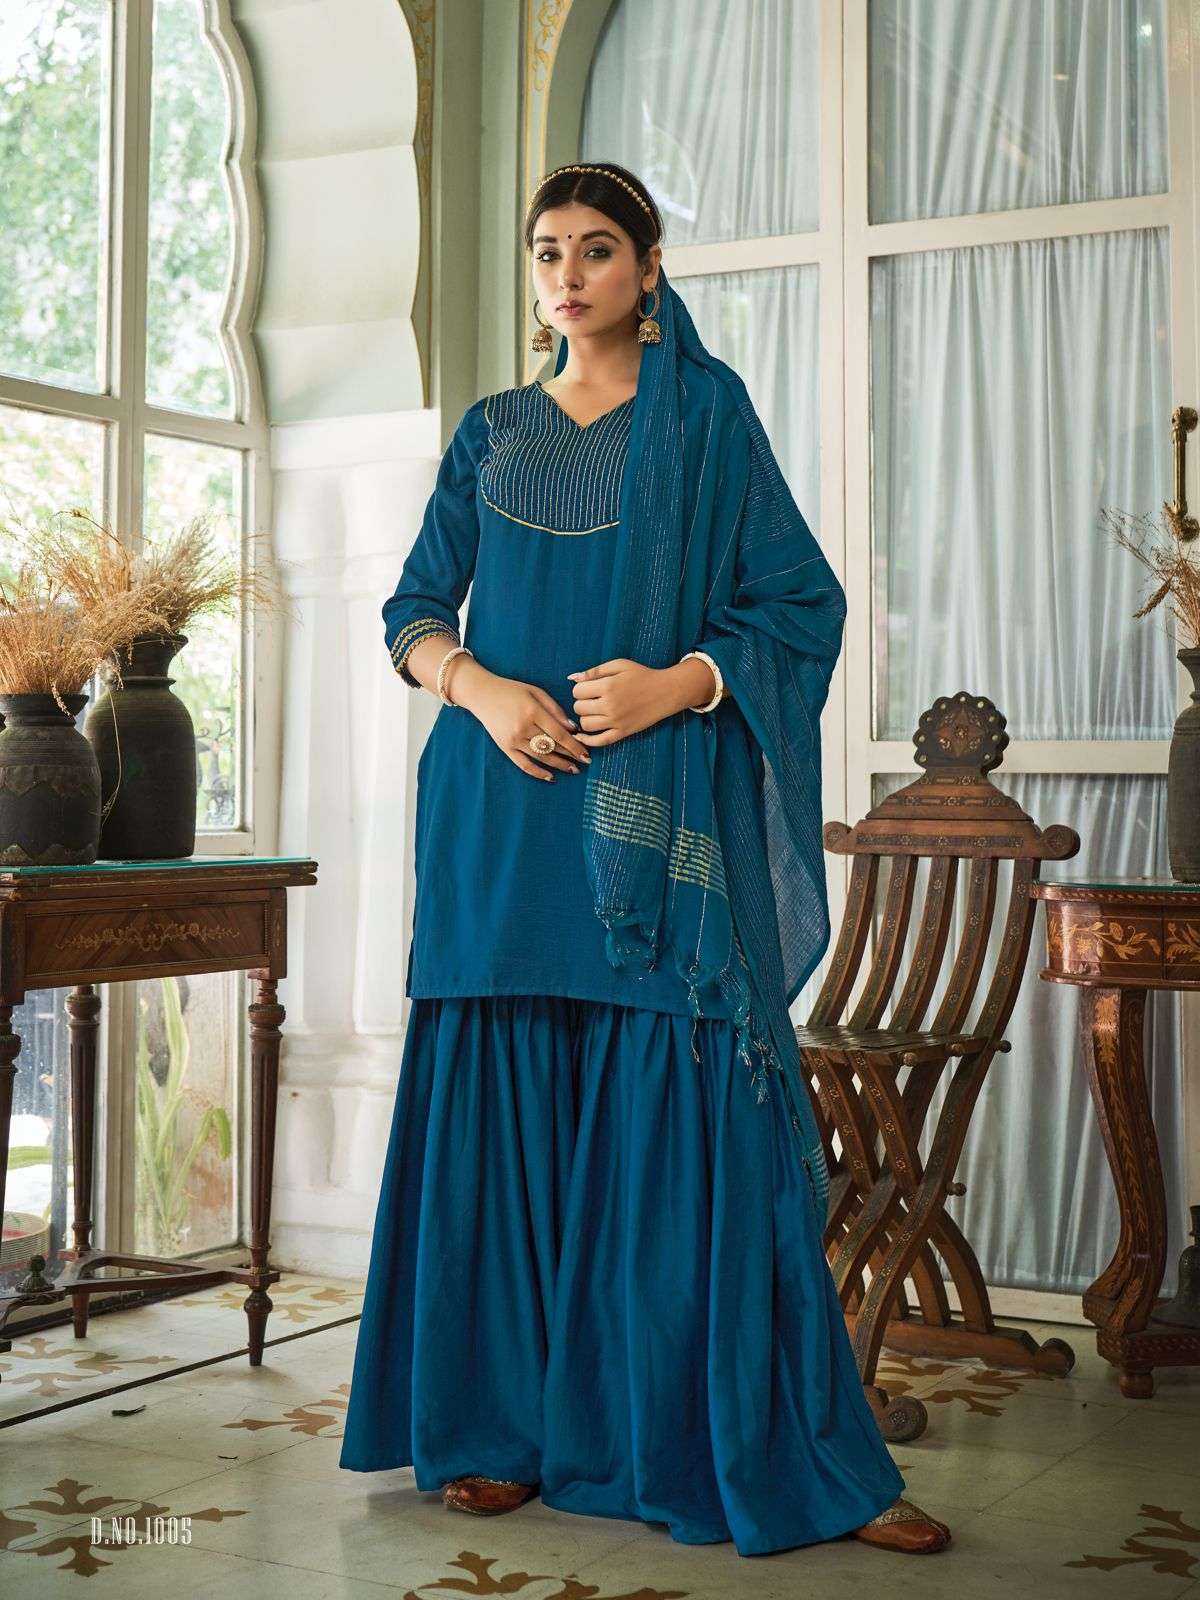 Fancy Women Kurta Kurti with Sharara Indian Dress Set Ethnic Top Salwar  Kameez | eBay